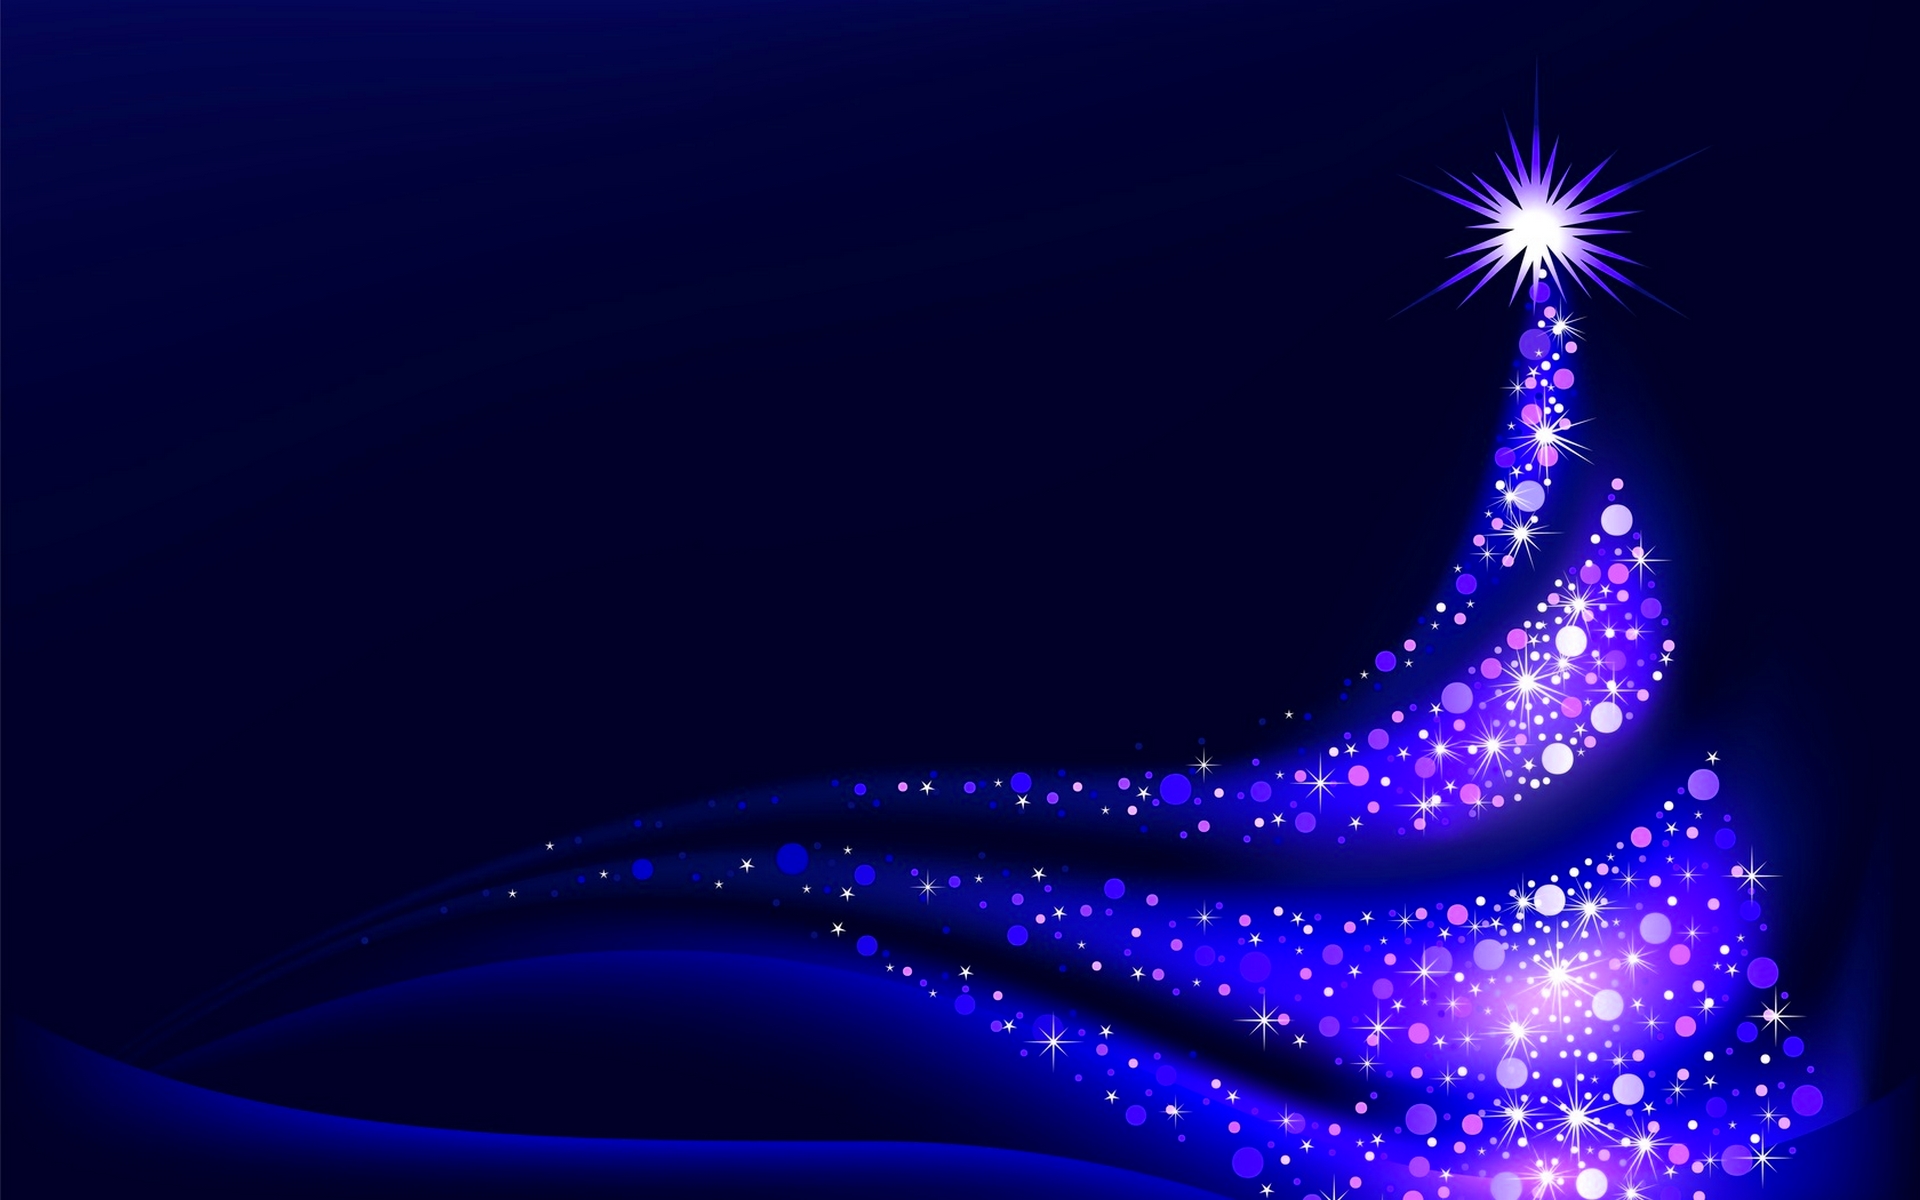 hq壁紙ダウンロード,青い,クリスマスの飾り,クリスマスツリー,光,紫の